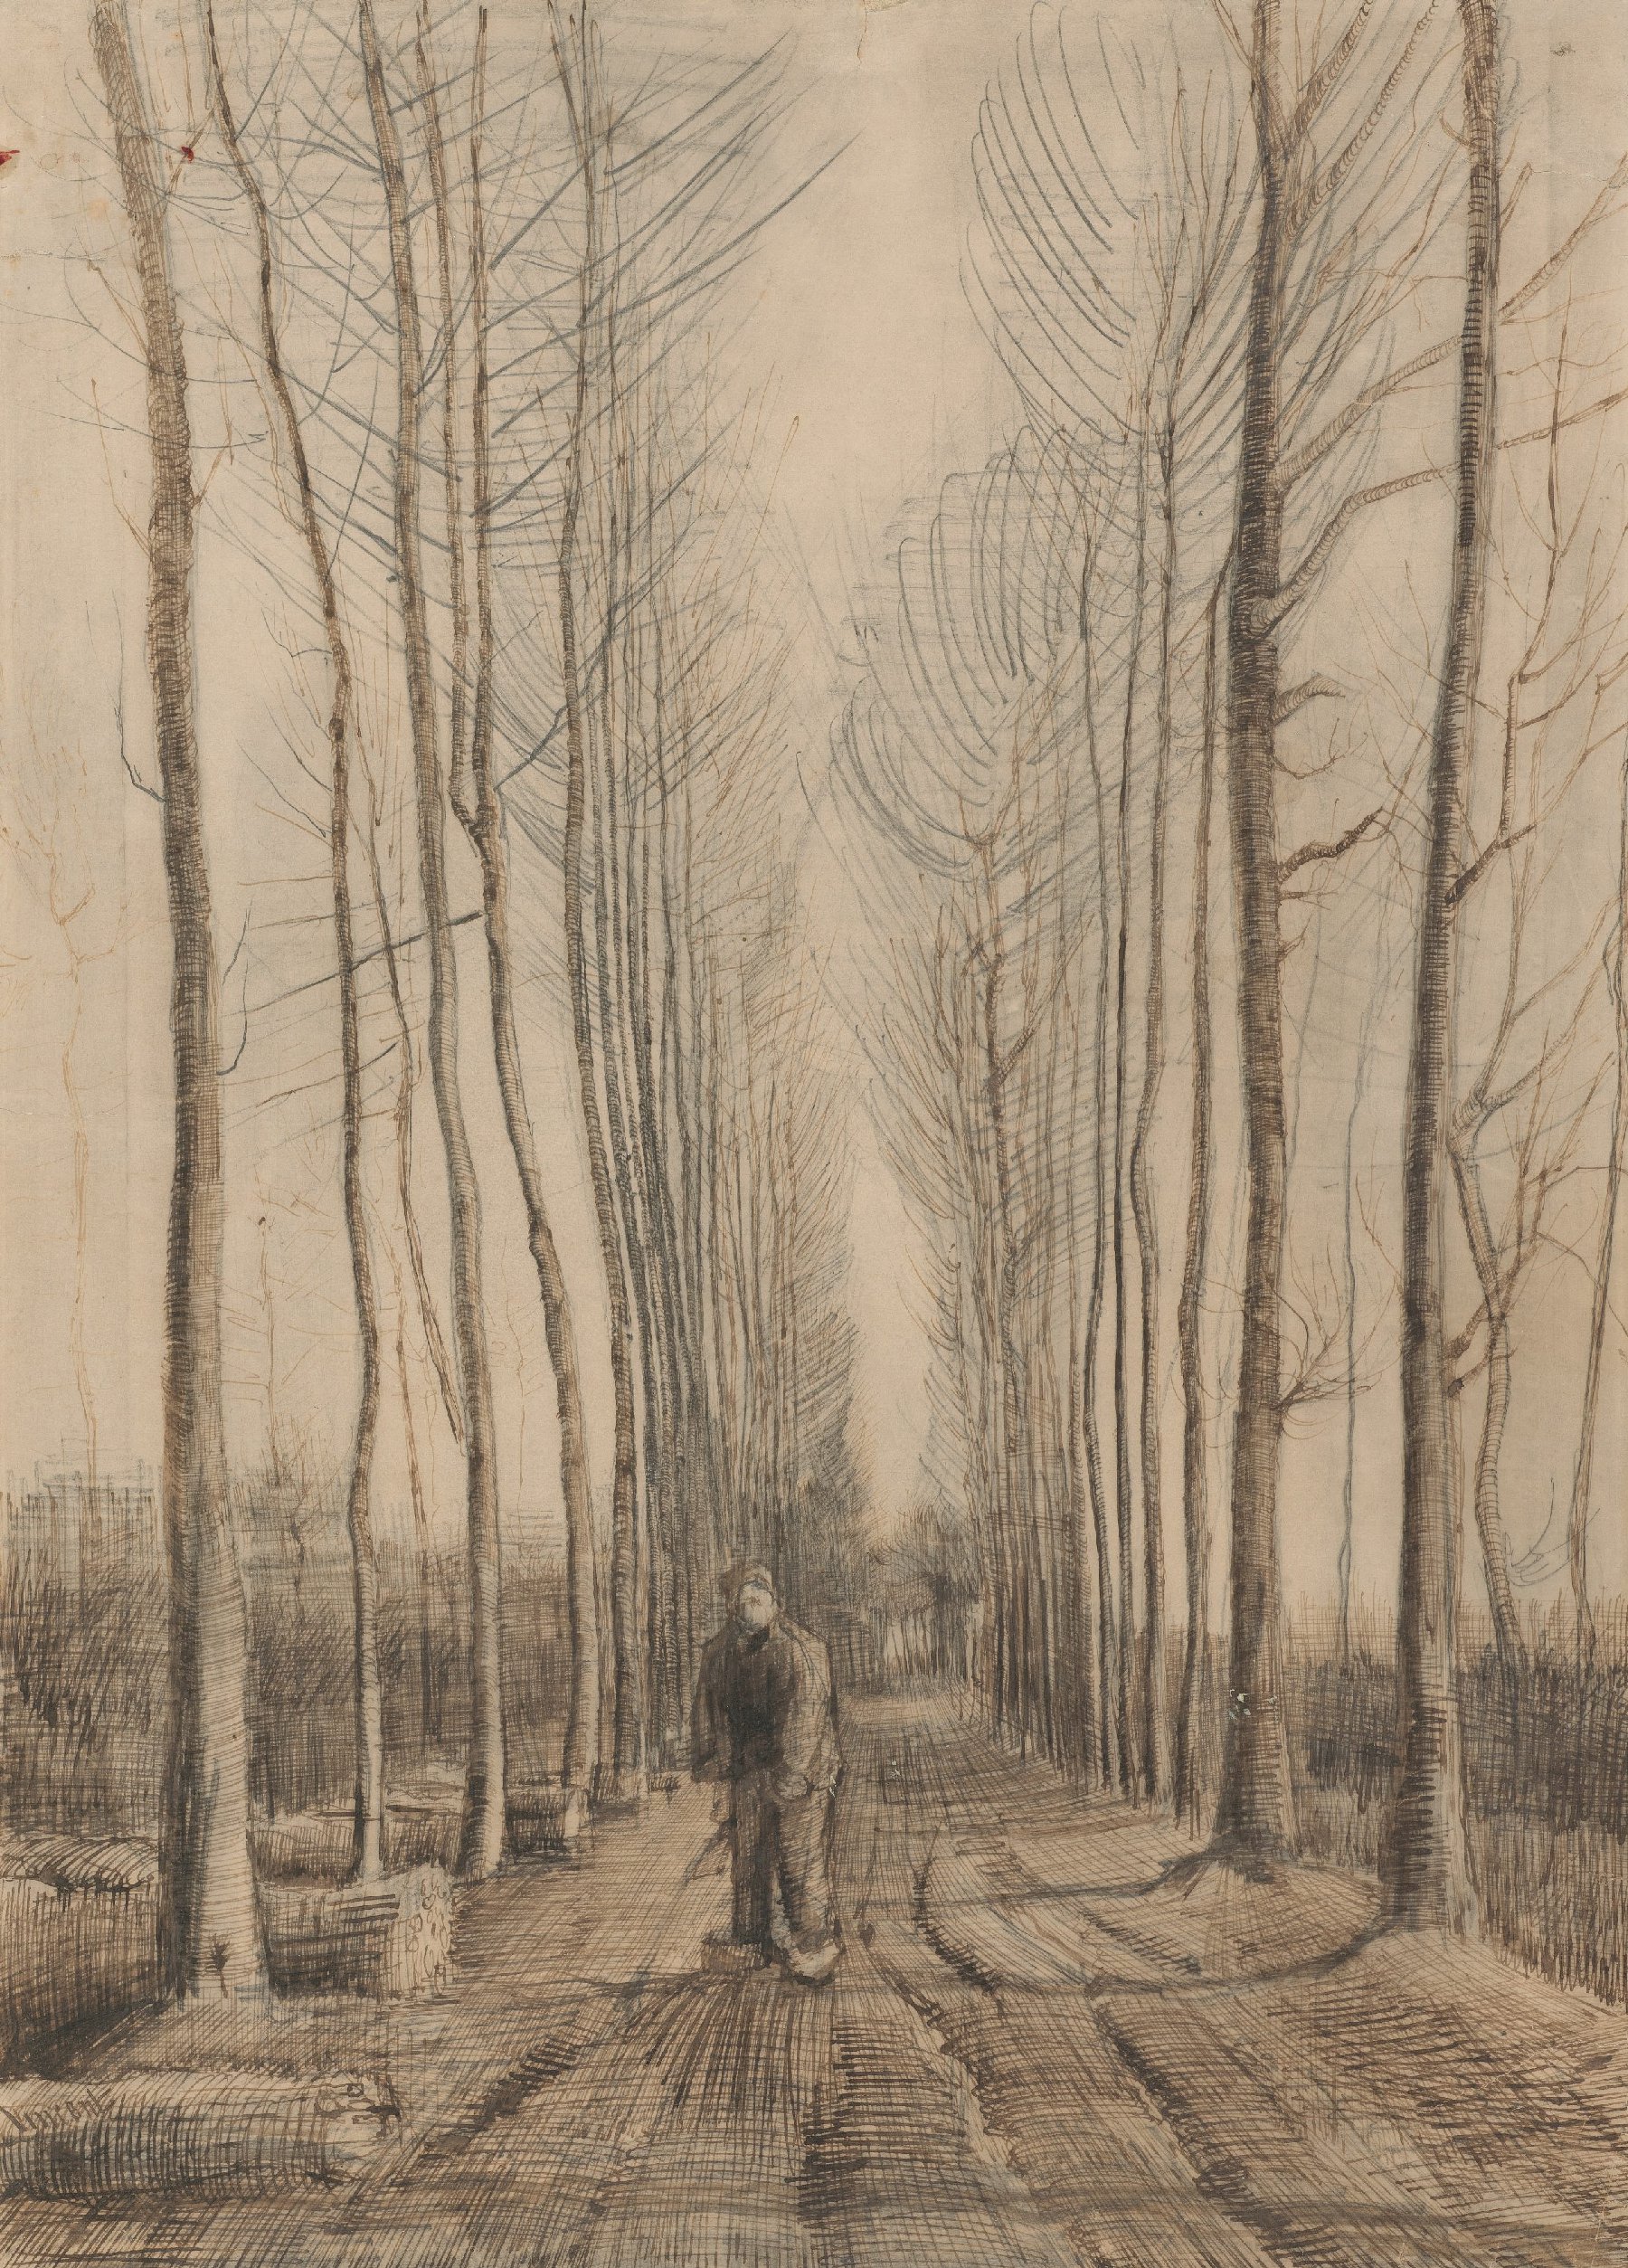 Populierenlaan Vincent van Gogh (1853 - 1890), Nuenen, maart 1884